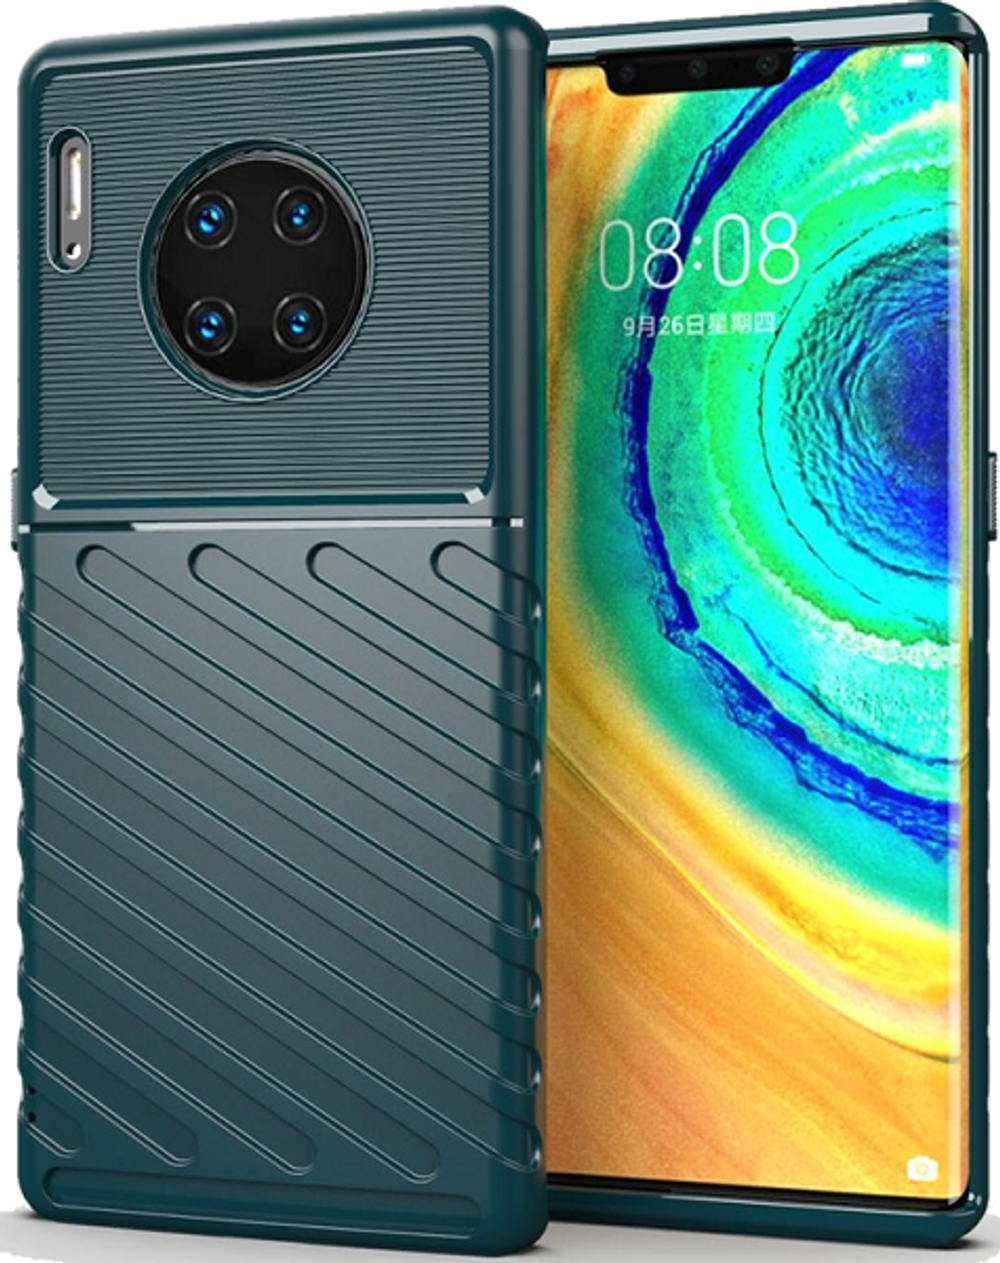 Чехол для Huawei Mate 30 Pro (Mate 30 RS) цвет Green (зеленый), серия Onyx от Caseport